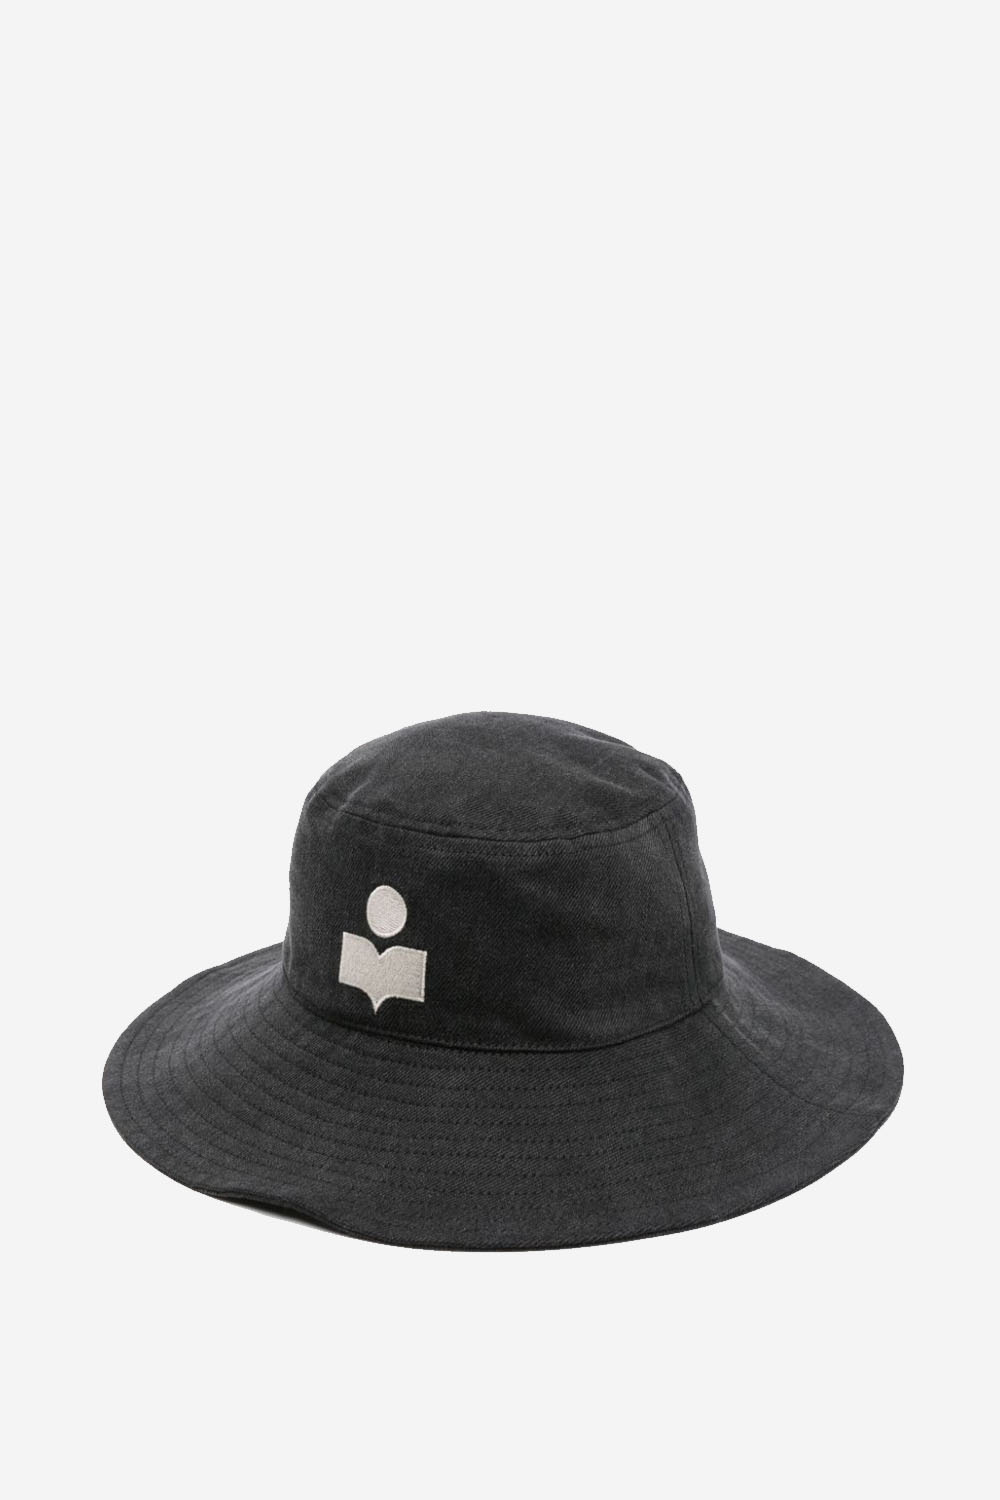 Isabel Marant Hats Black